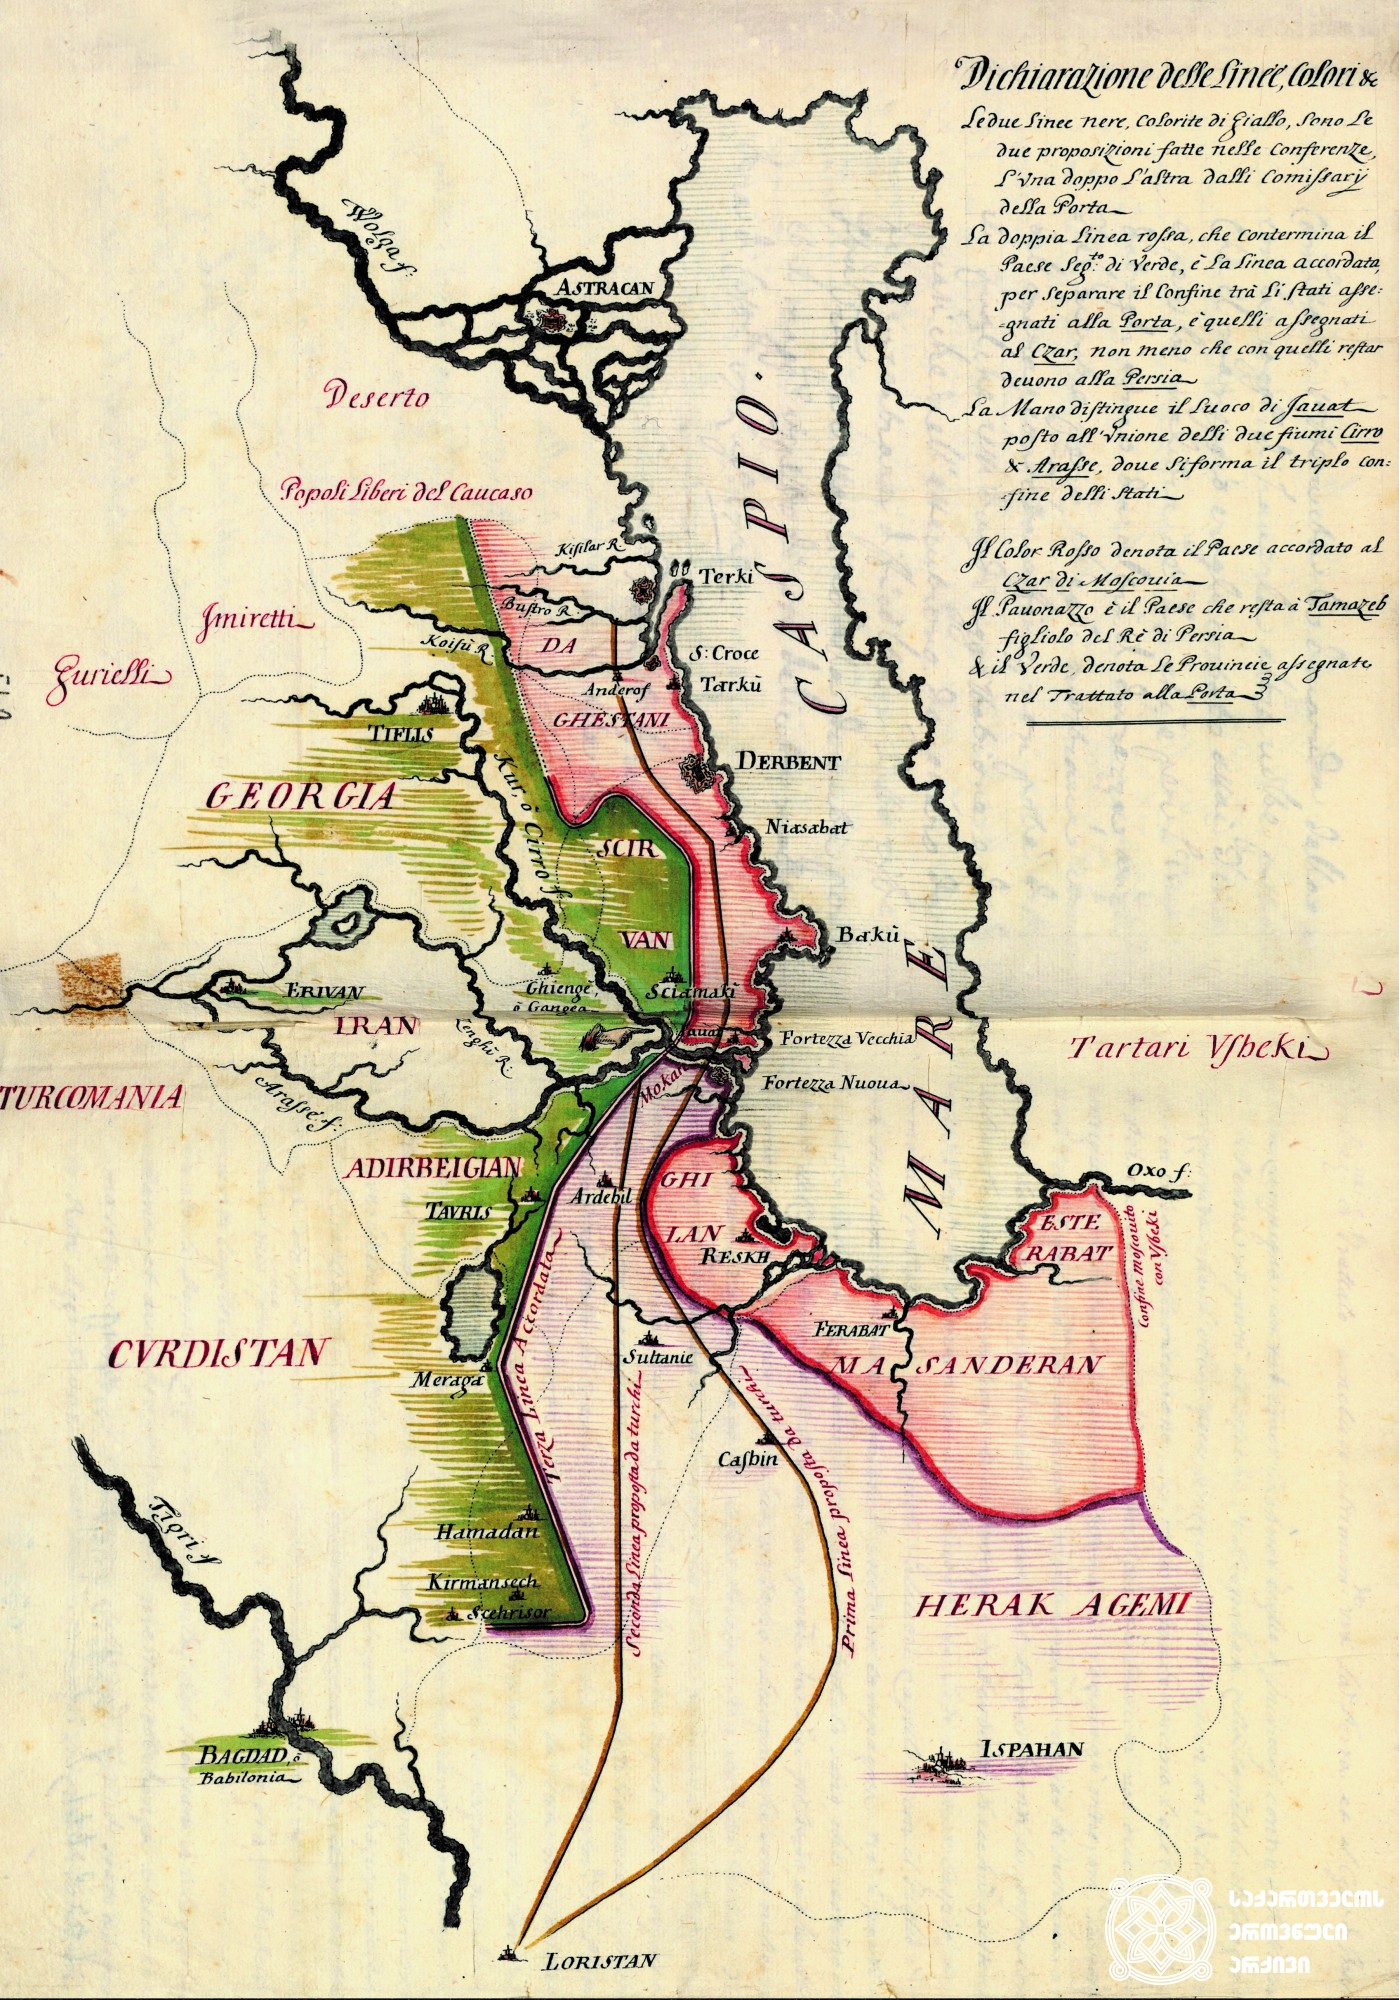 ბაილო* ფრანჩესკო გრიტის გზავნილს თანდართული კასპიის ზღვის რუკა (მდ. ვოლგის დელტითა და კავკასიით), რომელიც წარმოადგენს 1724 წლის 8 ივლისის რუსულ-თურქული ტრაქტატის თანახმად, ოტომანთა იმპერიისთვის, რუსეთსა და სპარსეთისთვის გადაცემულ მიწებს. <br>
ტერმინი “ბაილო” ნიშნავს დესპანს აღმოსავლეთში ვენეციის რესპუბლიკის კოლონიებში. <br>
1724 წელი. <br>
დოკუმენტის ციფრული ასლი ეროვნულ არქივს გადასცა ვენეციის სახელმწიფო არქივმა.
The map of the Caspian Sea (with the delta of river Volga and Caucasus), attached to the parcel of Bailo Francesco Gritti. The map represents the lands transferred to Ottoman Empire, Russian and Persia according to the Russian-Turkish treaty of July 8, 1724.   <br>
The digital copy of the document was transferred to the National Archives of Georgia by the State Archives of Venice. <br>
1724.